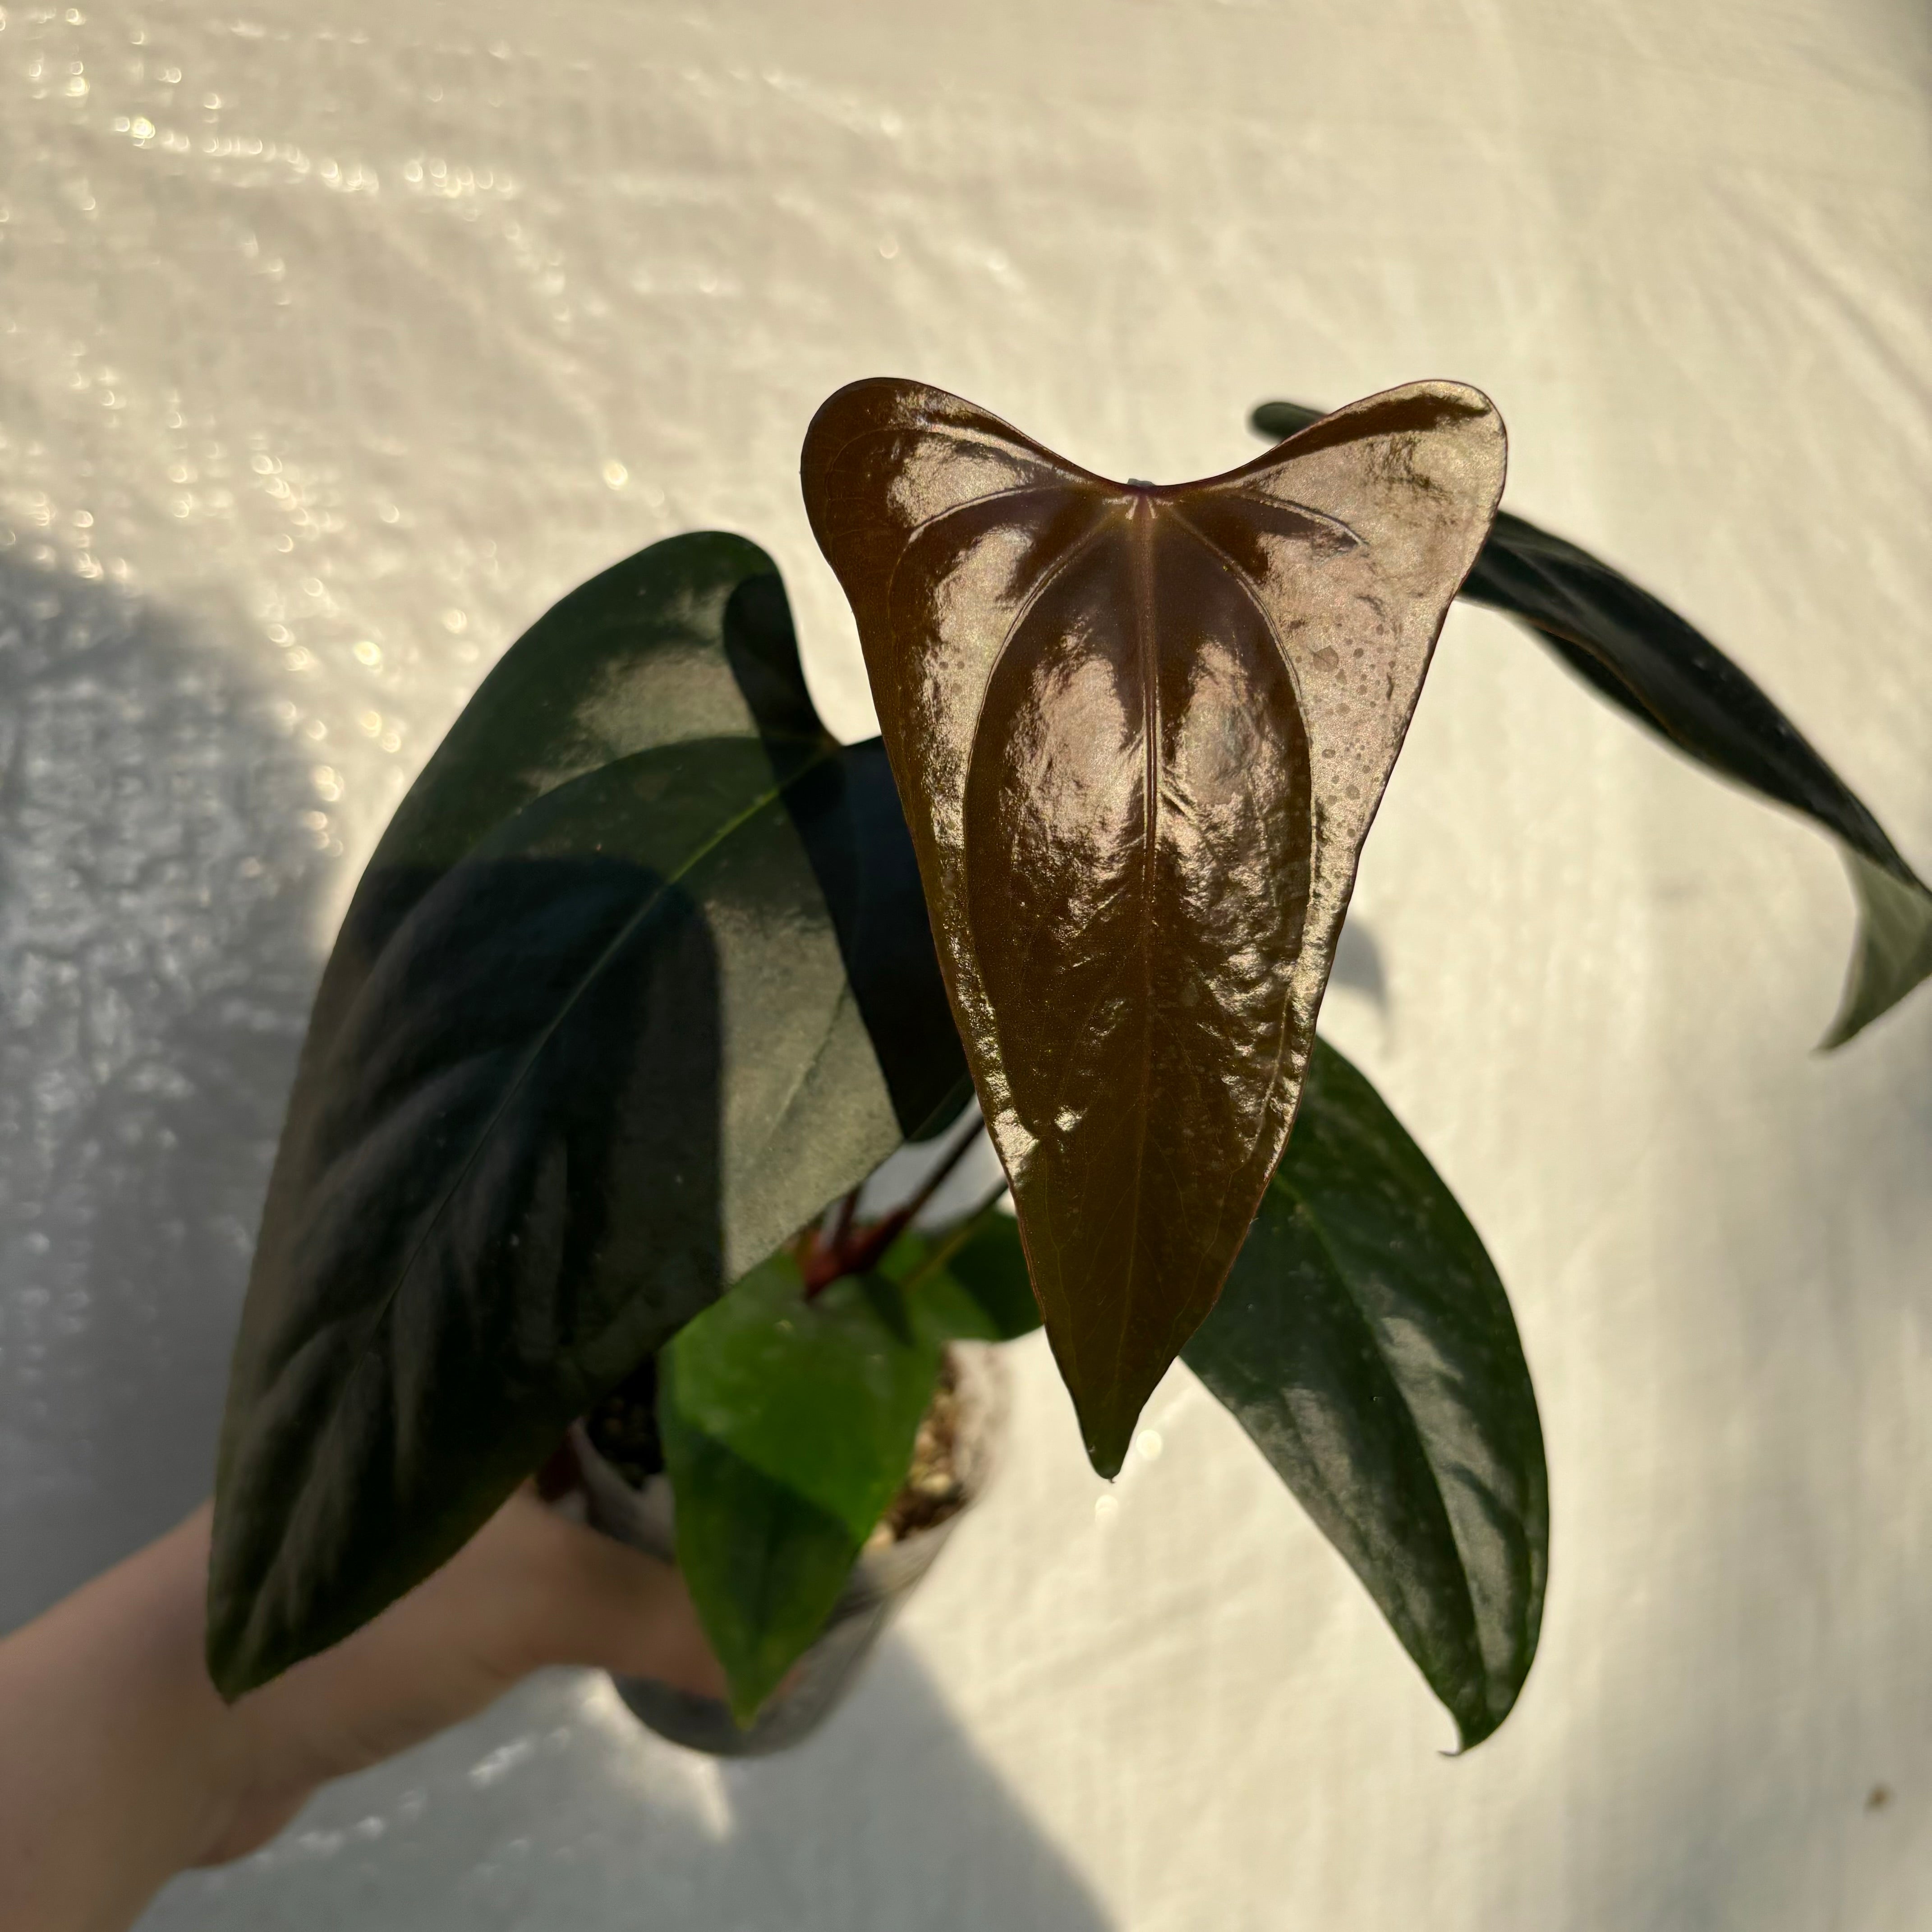 Anthurium nigrolaminum ‘Gigi’ x portillae ‘Dorito’ (EXACT PLANT)